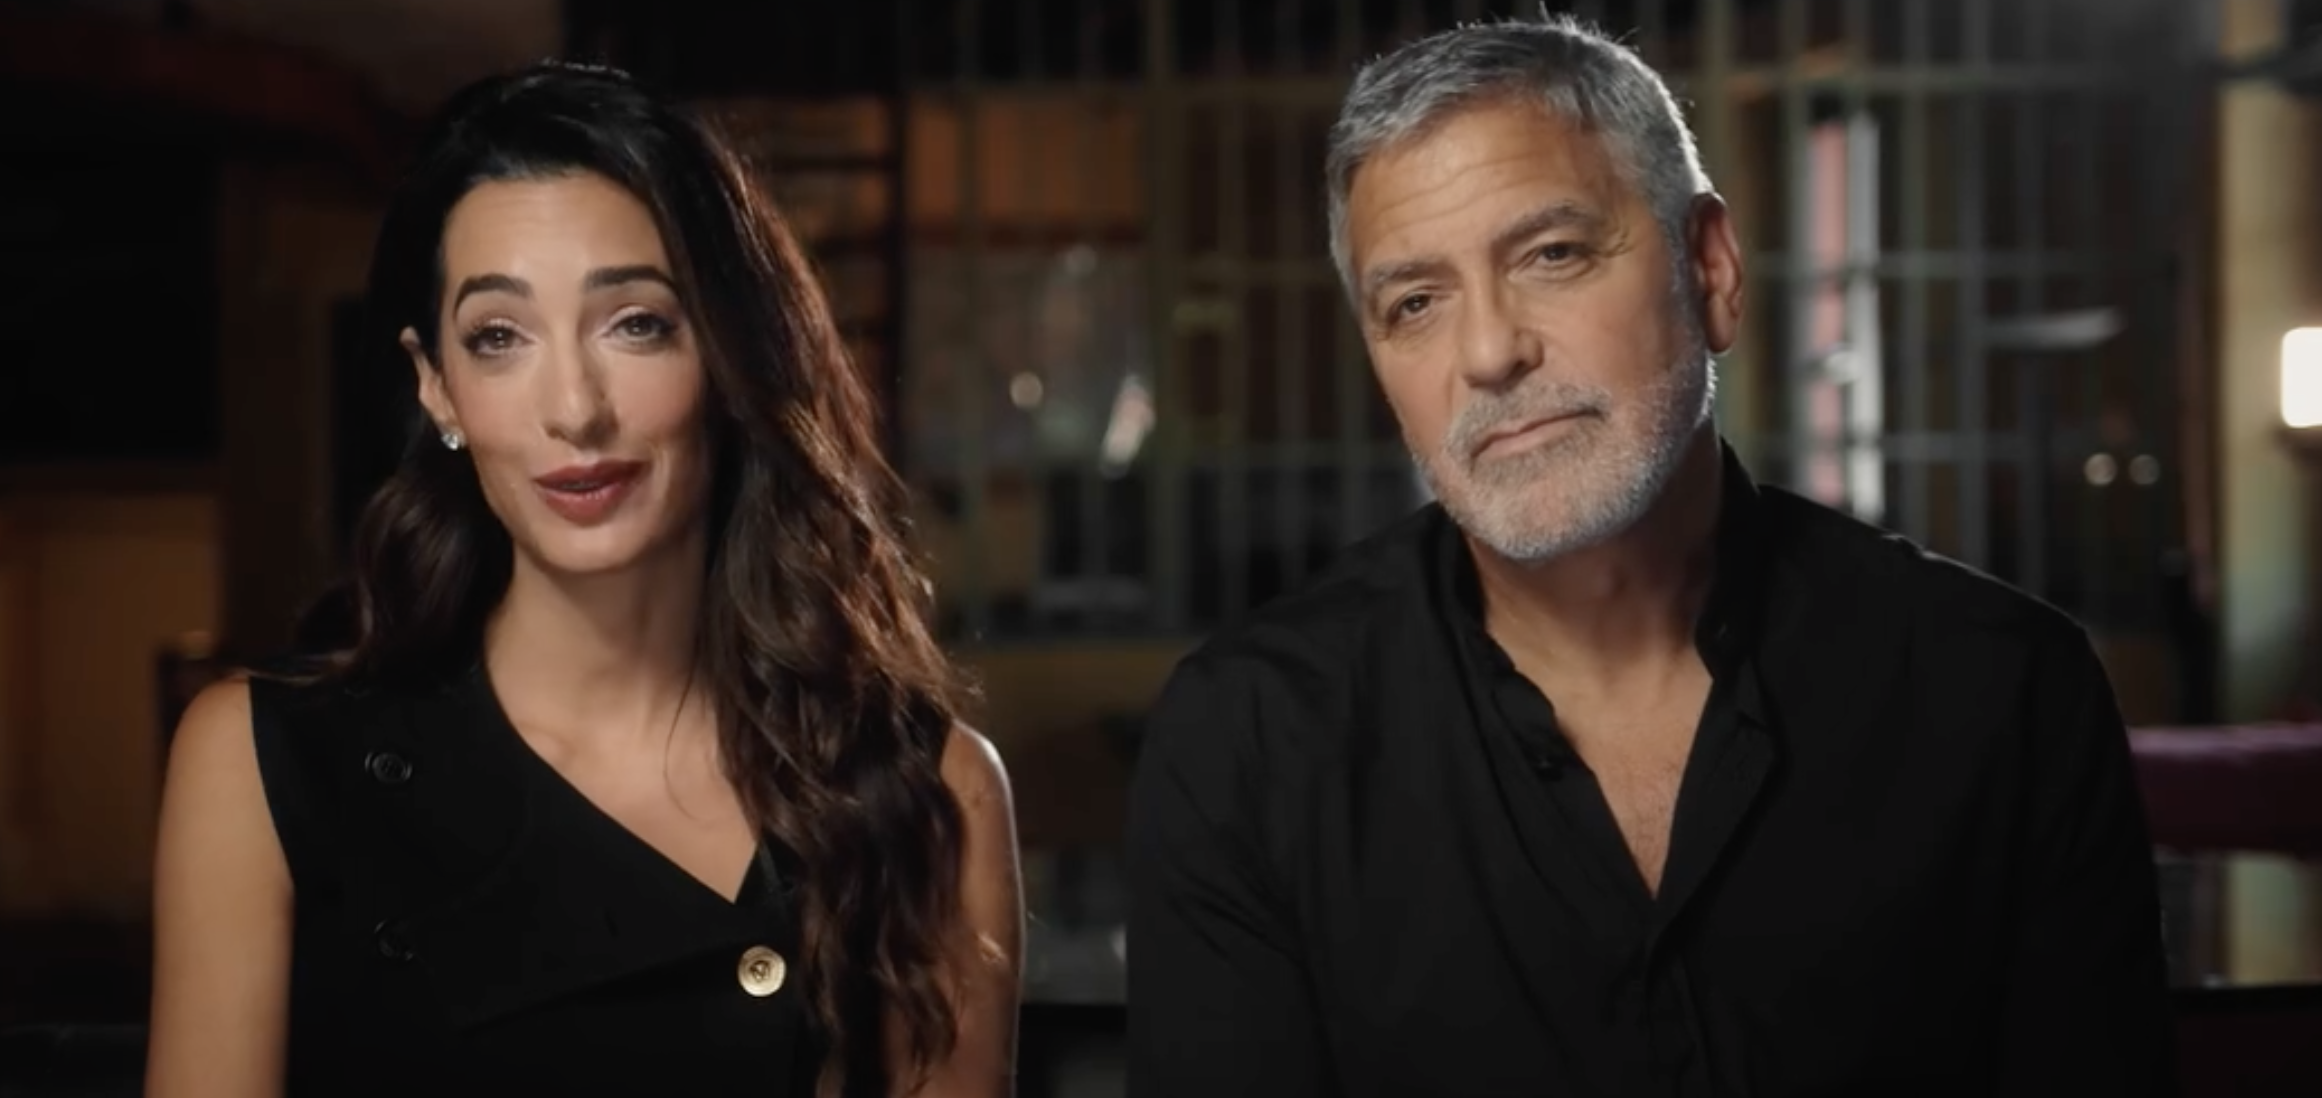 喬治·克隆尼因擔心妻子阿瑪爾·克隆尼（左）恐面臨白宮制裁，致電拜登的高級顧問。圖/翻攝自Clooney Foundation for Justice臉書